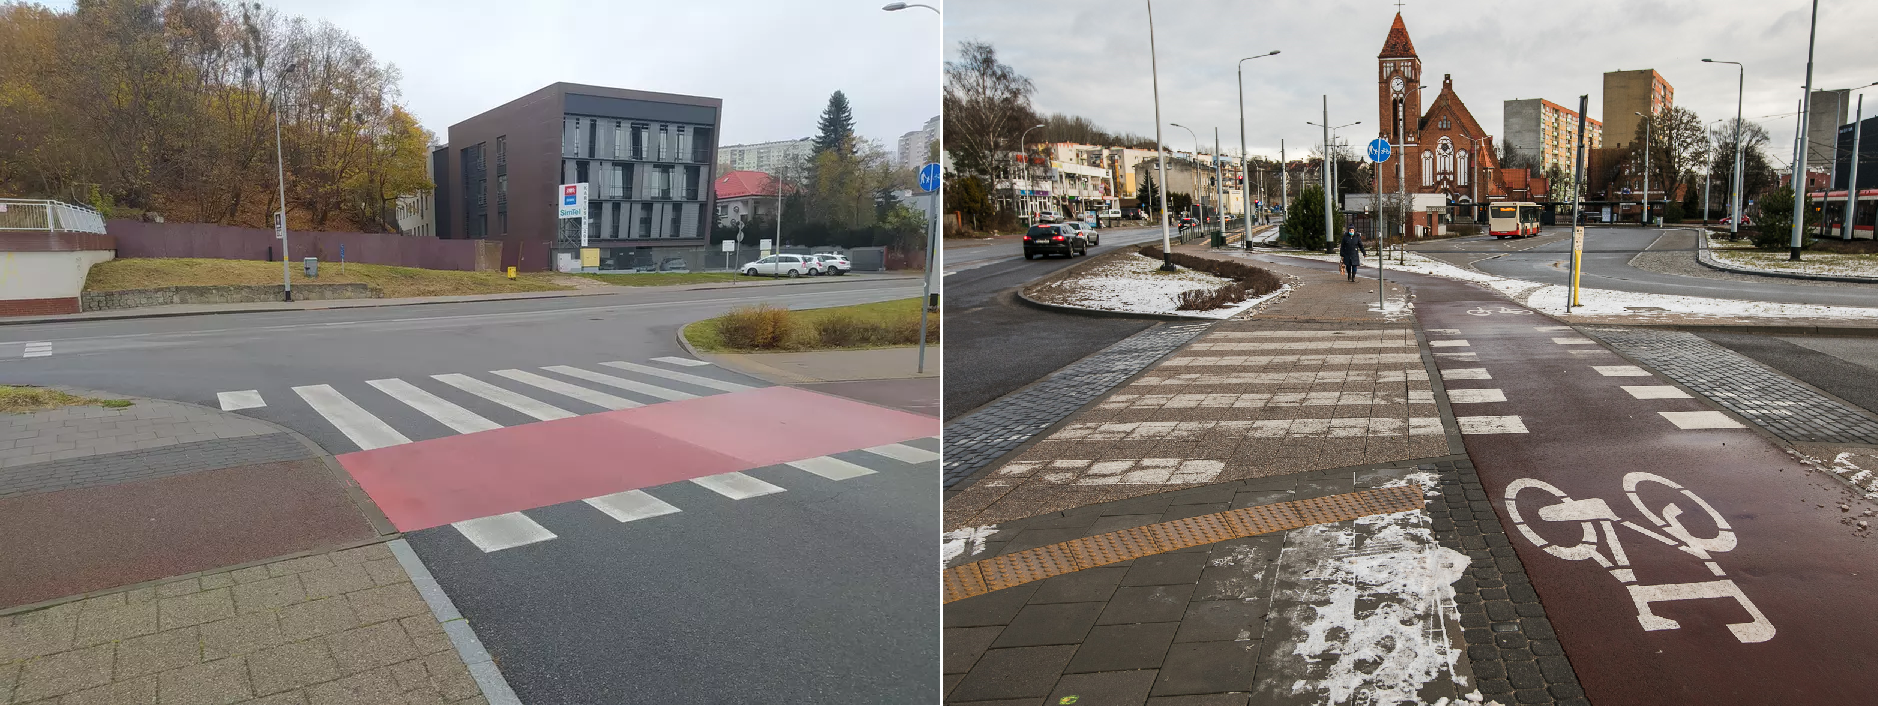 Widok skrzyżowania ulicy Kartuskiej i ulicy Struga przed i po wykonaniu inwestycji